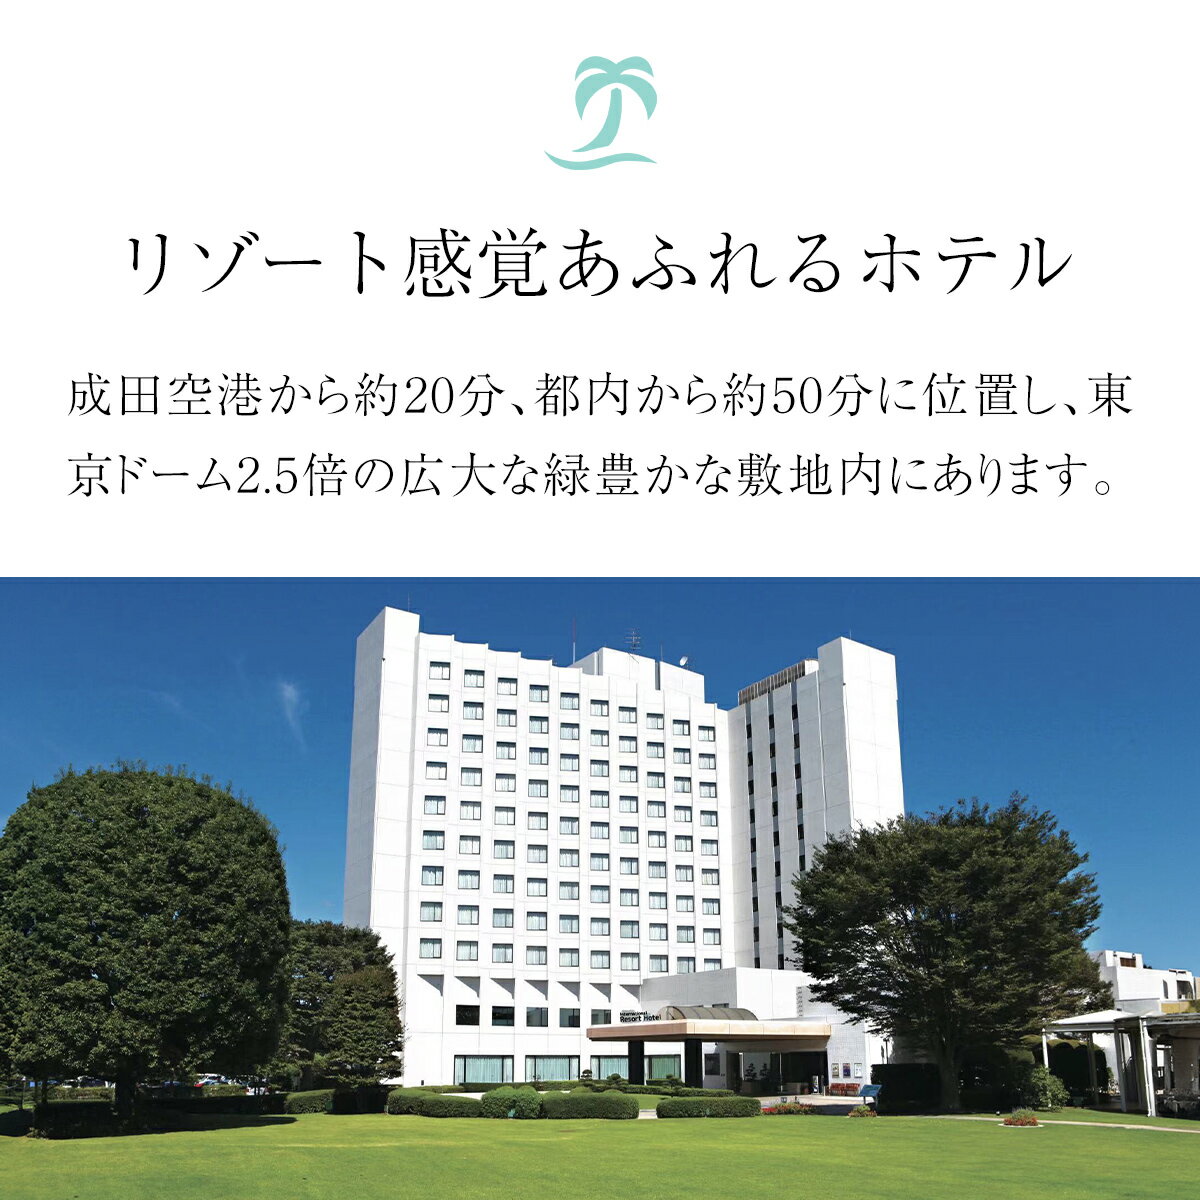 【ふるさと納税】ホテル&湯楽城 ギフトカード3...の紹介画像3